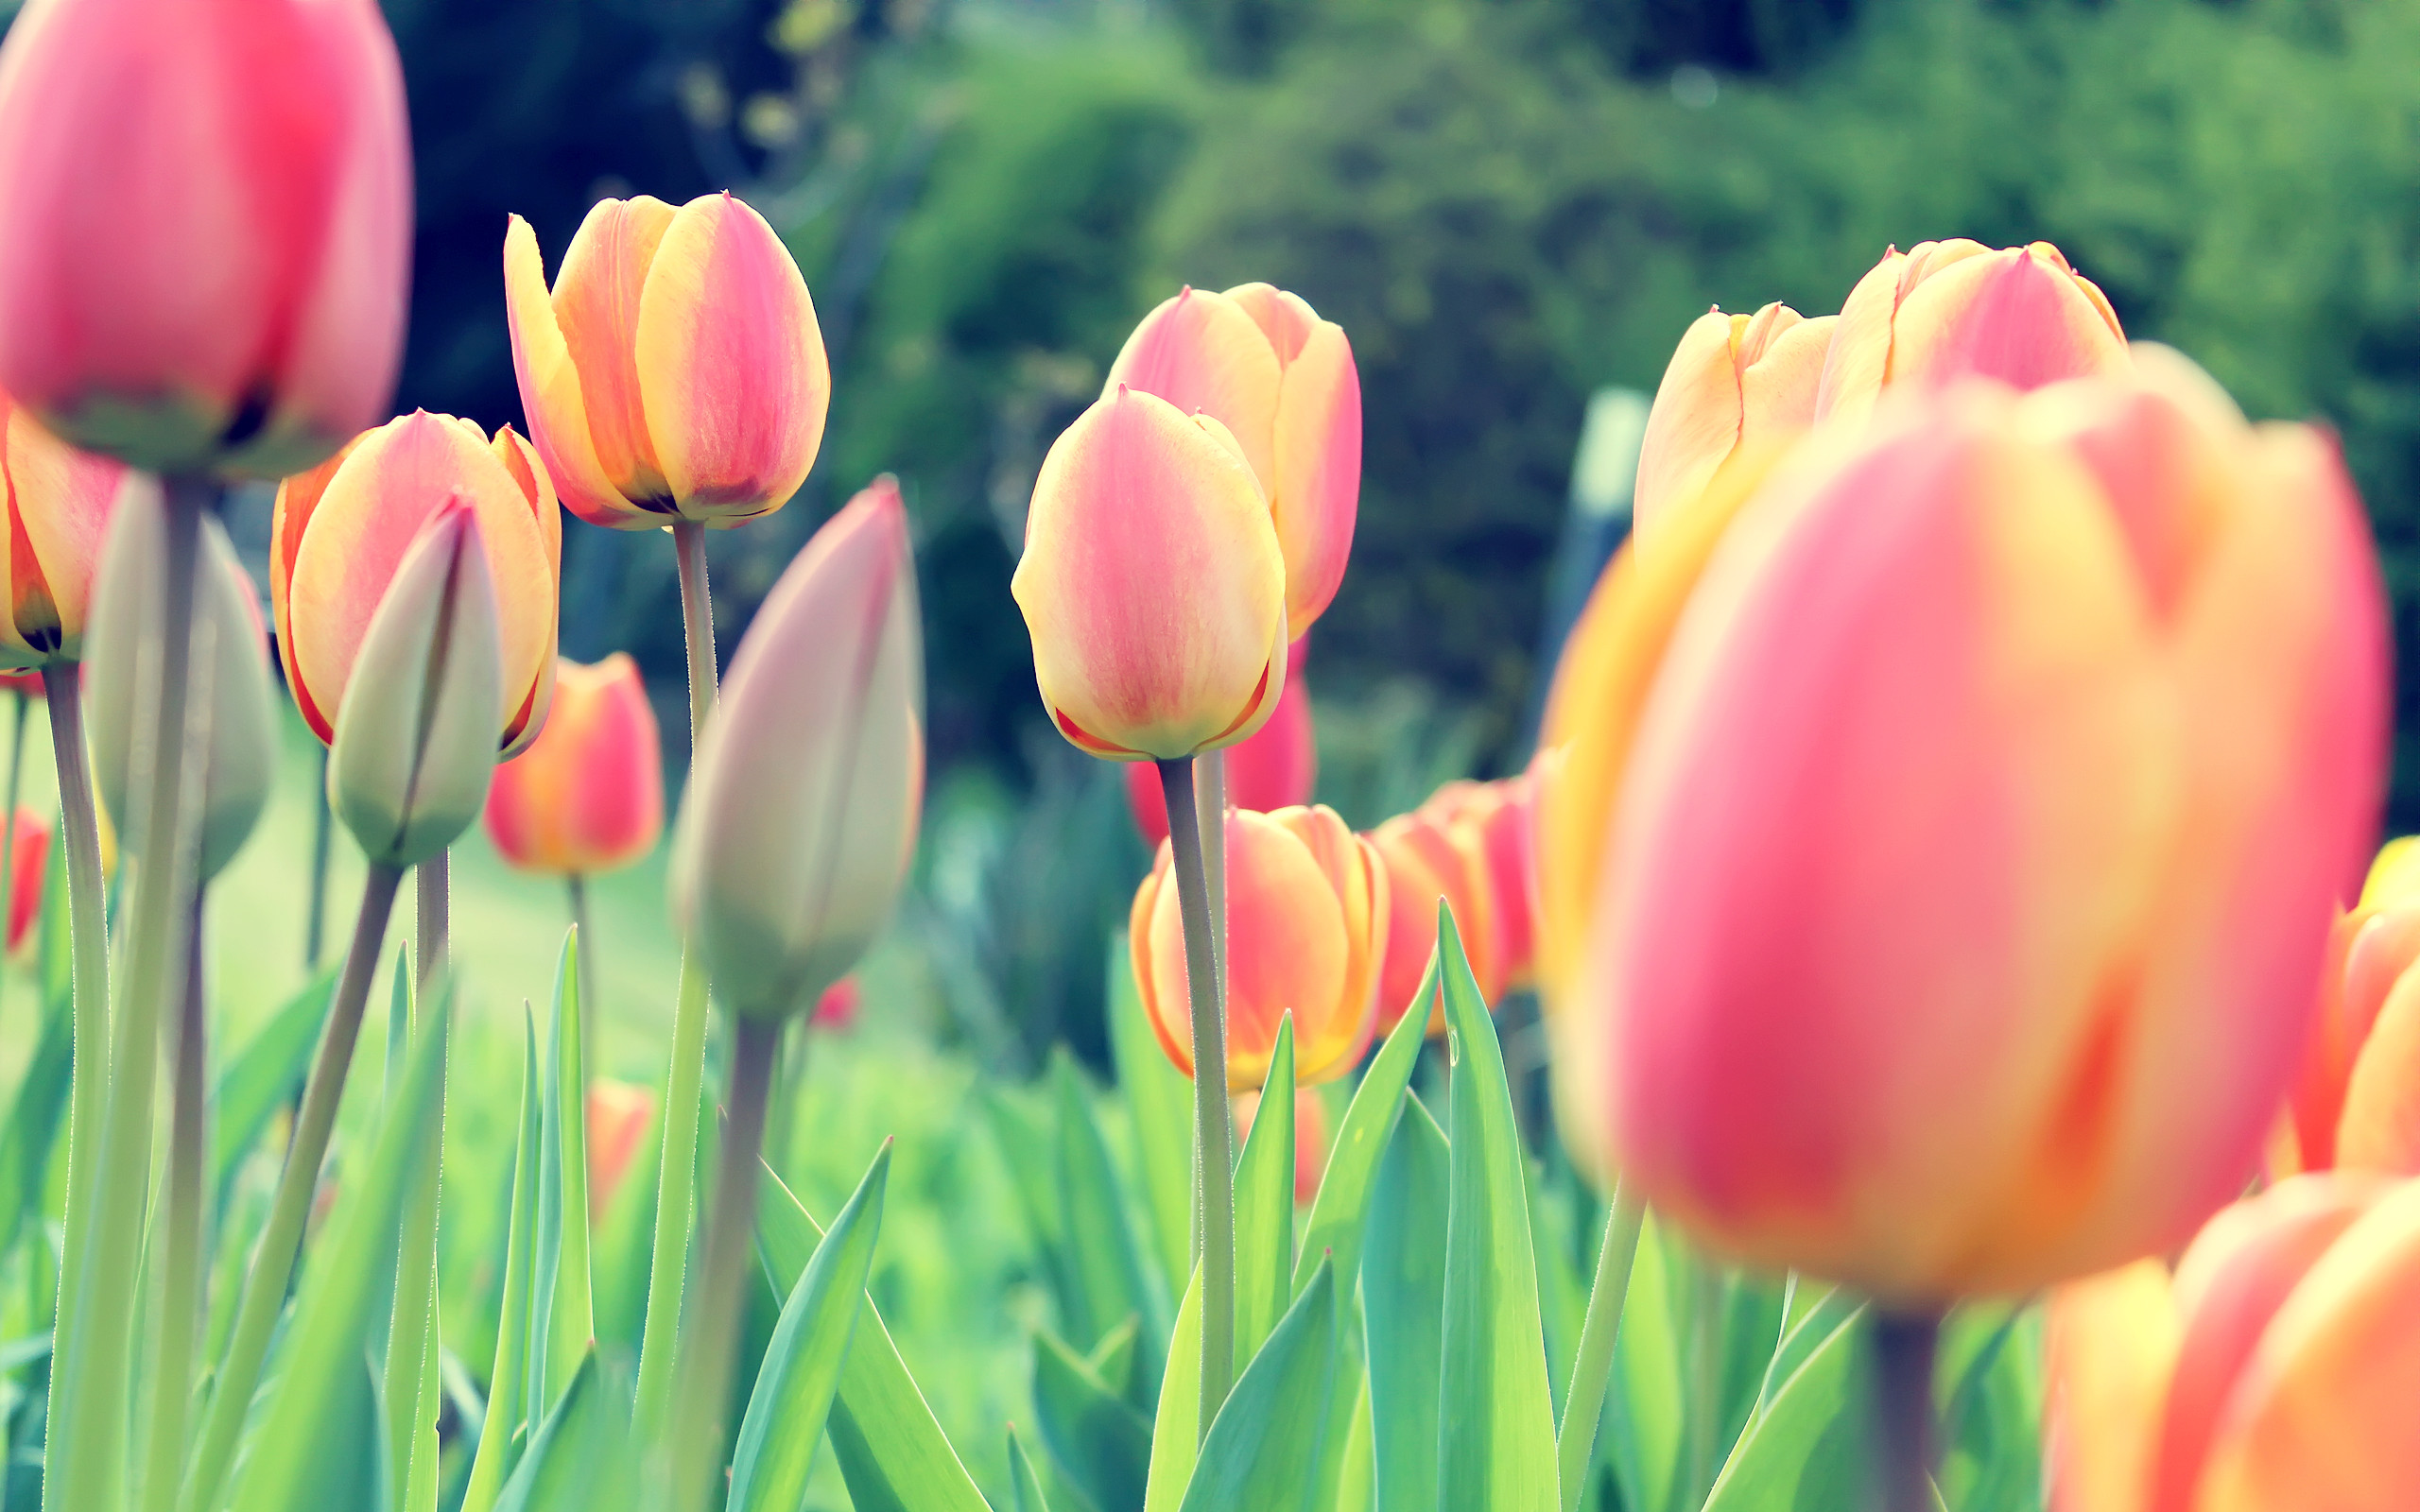 Lấy cảm hứng từ vẻ đẹp tự nhiên và vẻ đẹp tuyệt đối của hoa tulip, các hình nền hoa tulip sẽ làm bạn say mê và thích thú. Với màu sắc tươi sáng và họa tiết độc đáo, các hình nền này sẽ mang đến cho bạn một cảm giác mới mẻ trên màn hình của bạn.